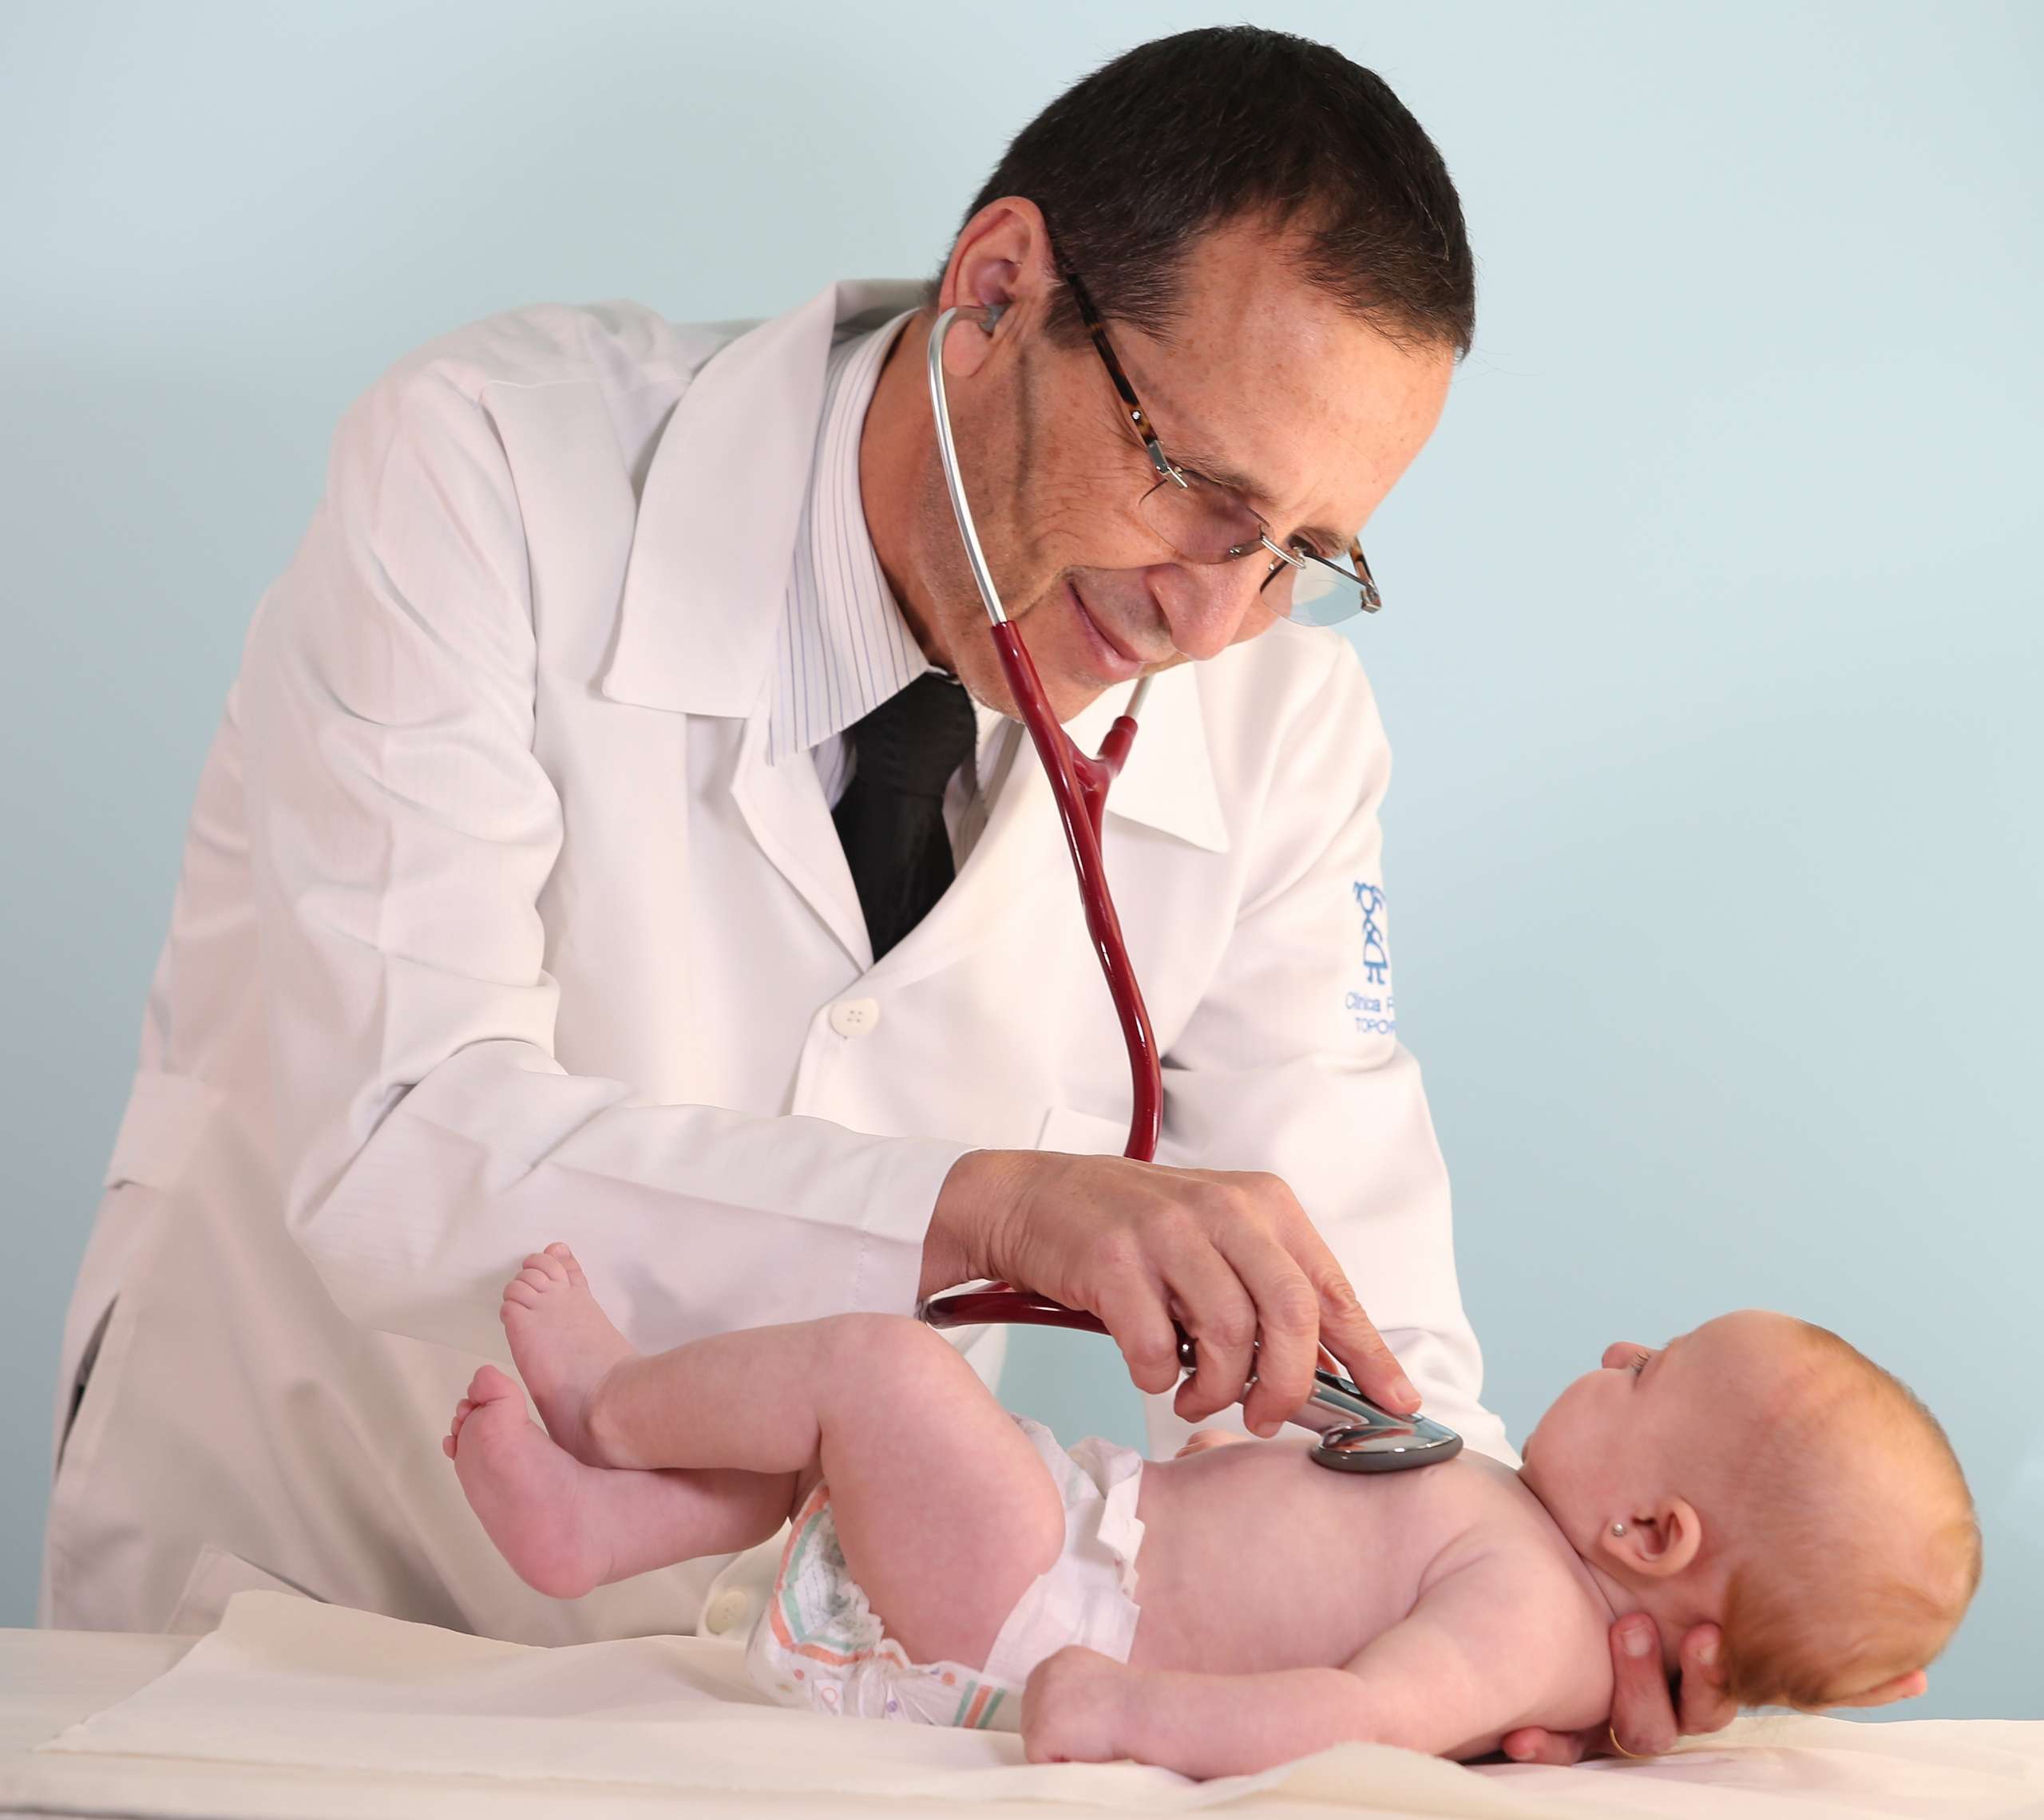 O Dr Mauro Toporovski examina bebê em seu consultório: crianças pequenas são as mais vulneráveis no uso de produtos cosméticos 